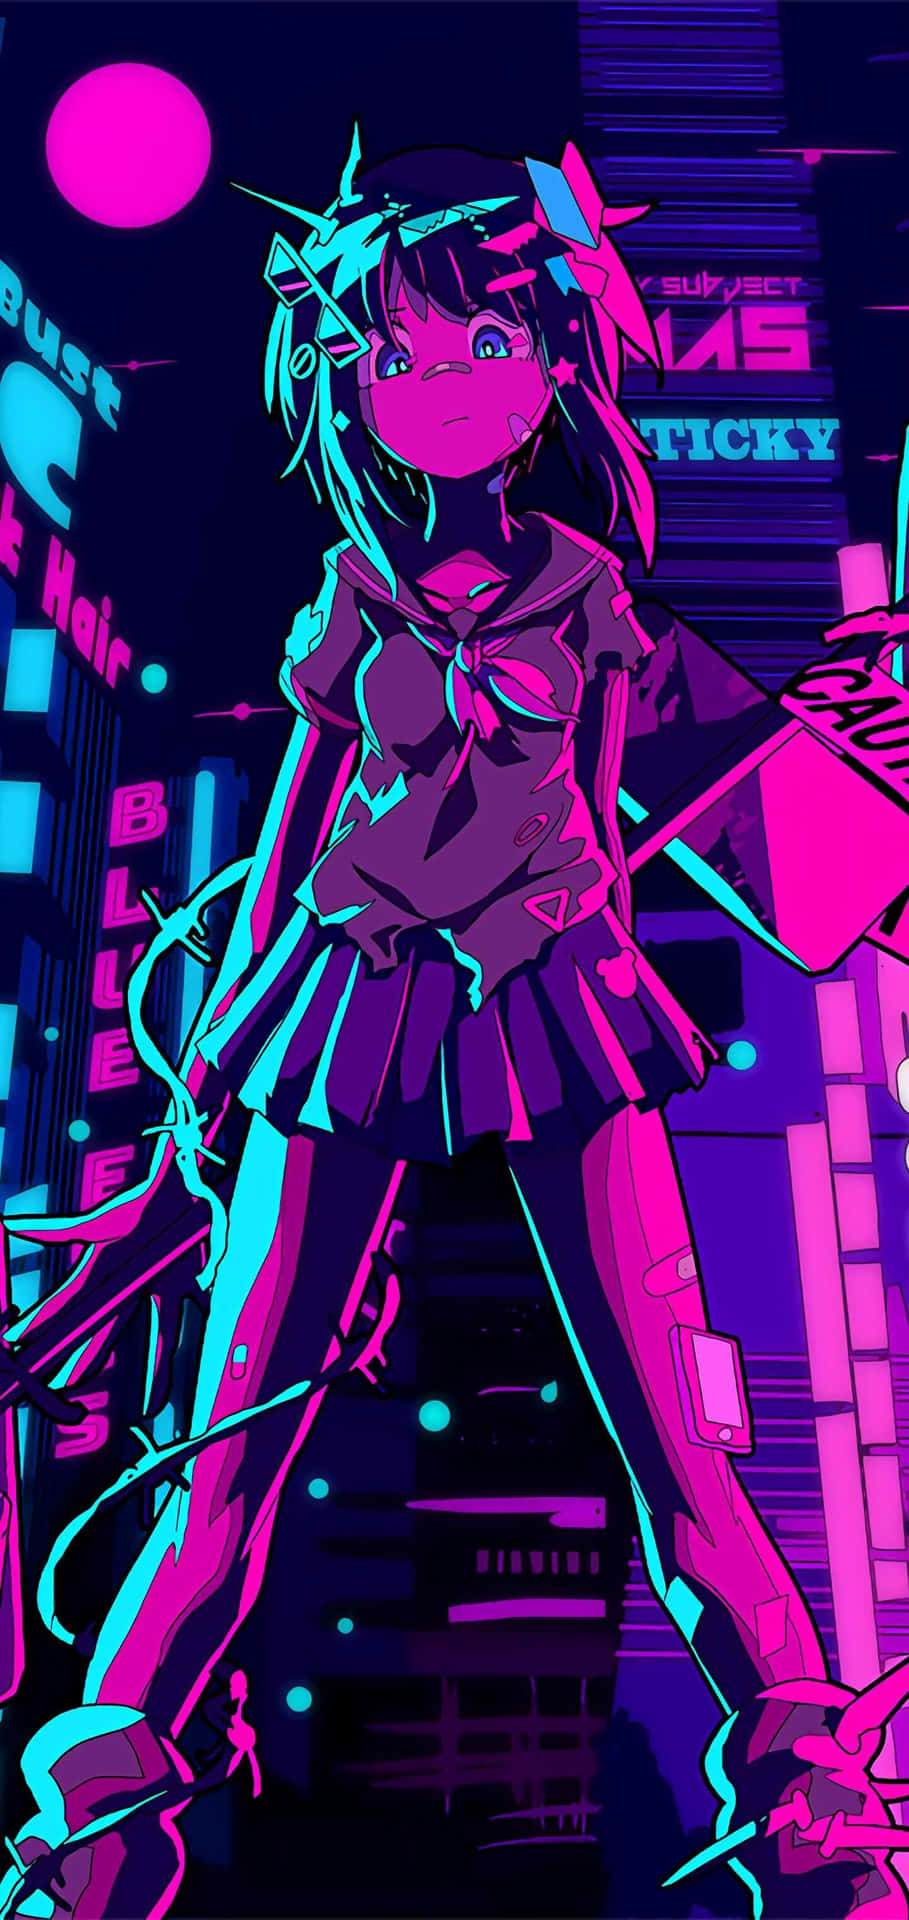 Cyberpunk Anime Girlin Purple Hues.jpg Wallpaper